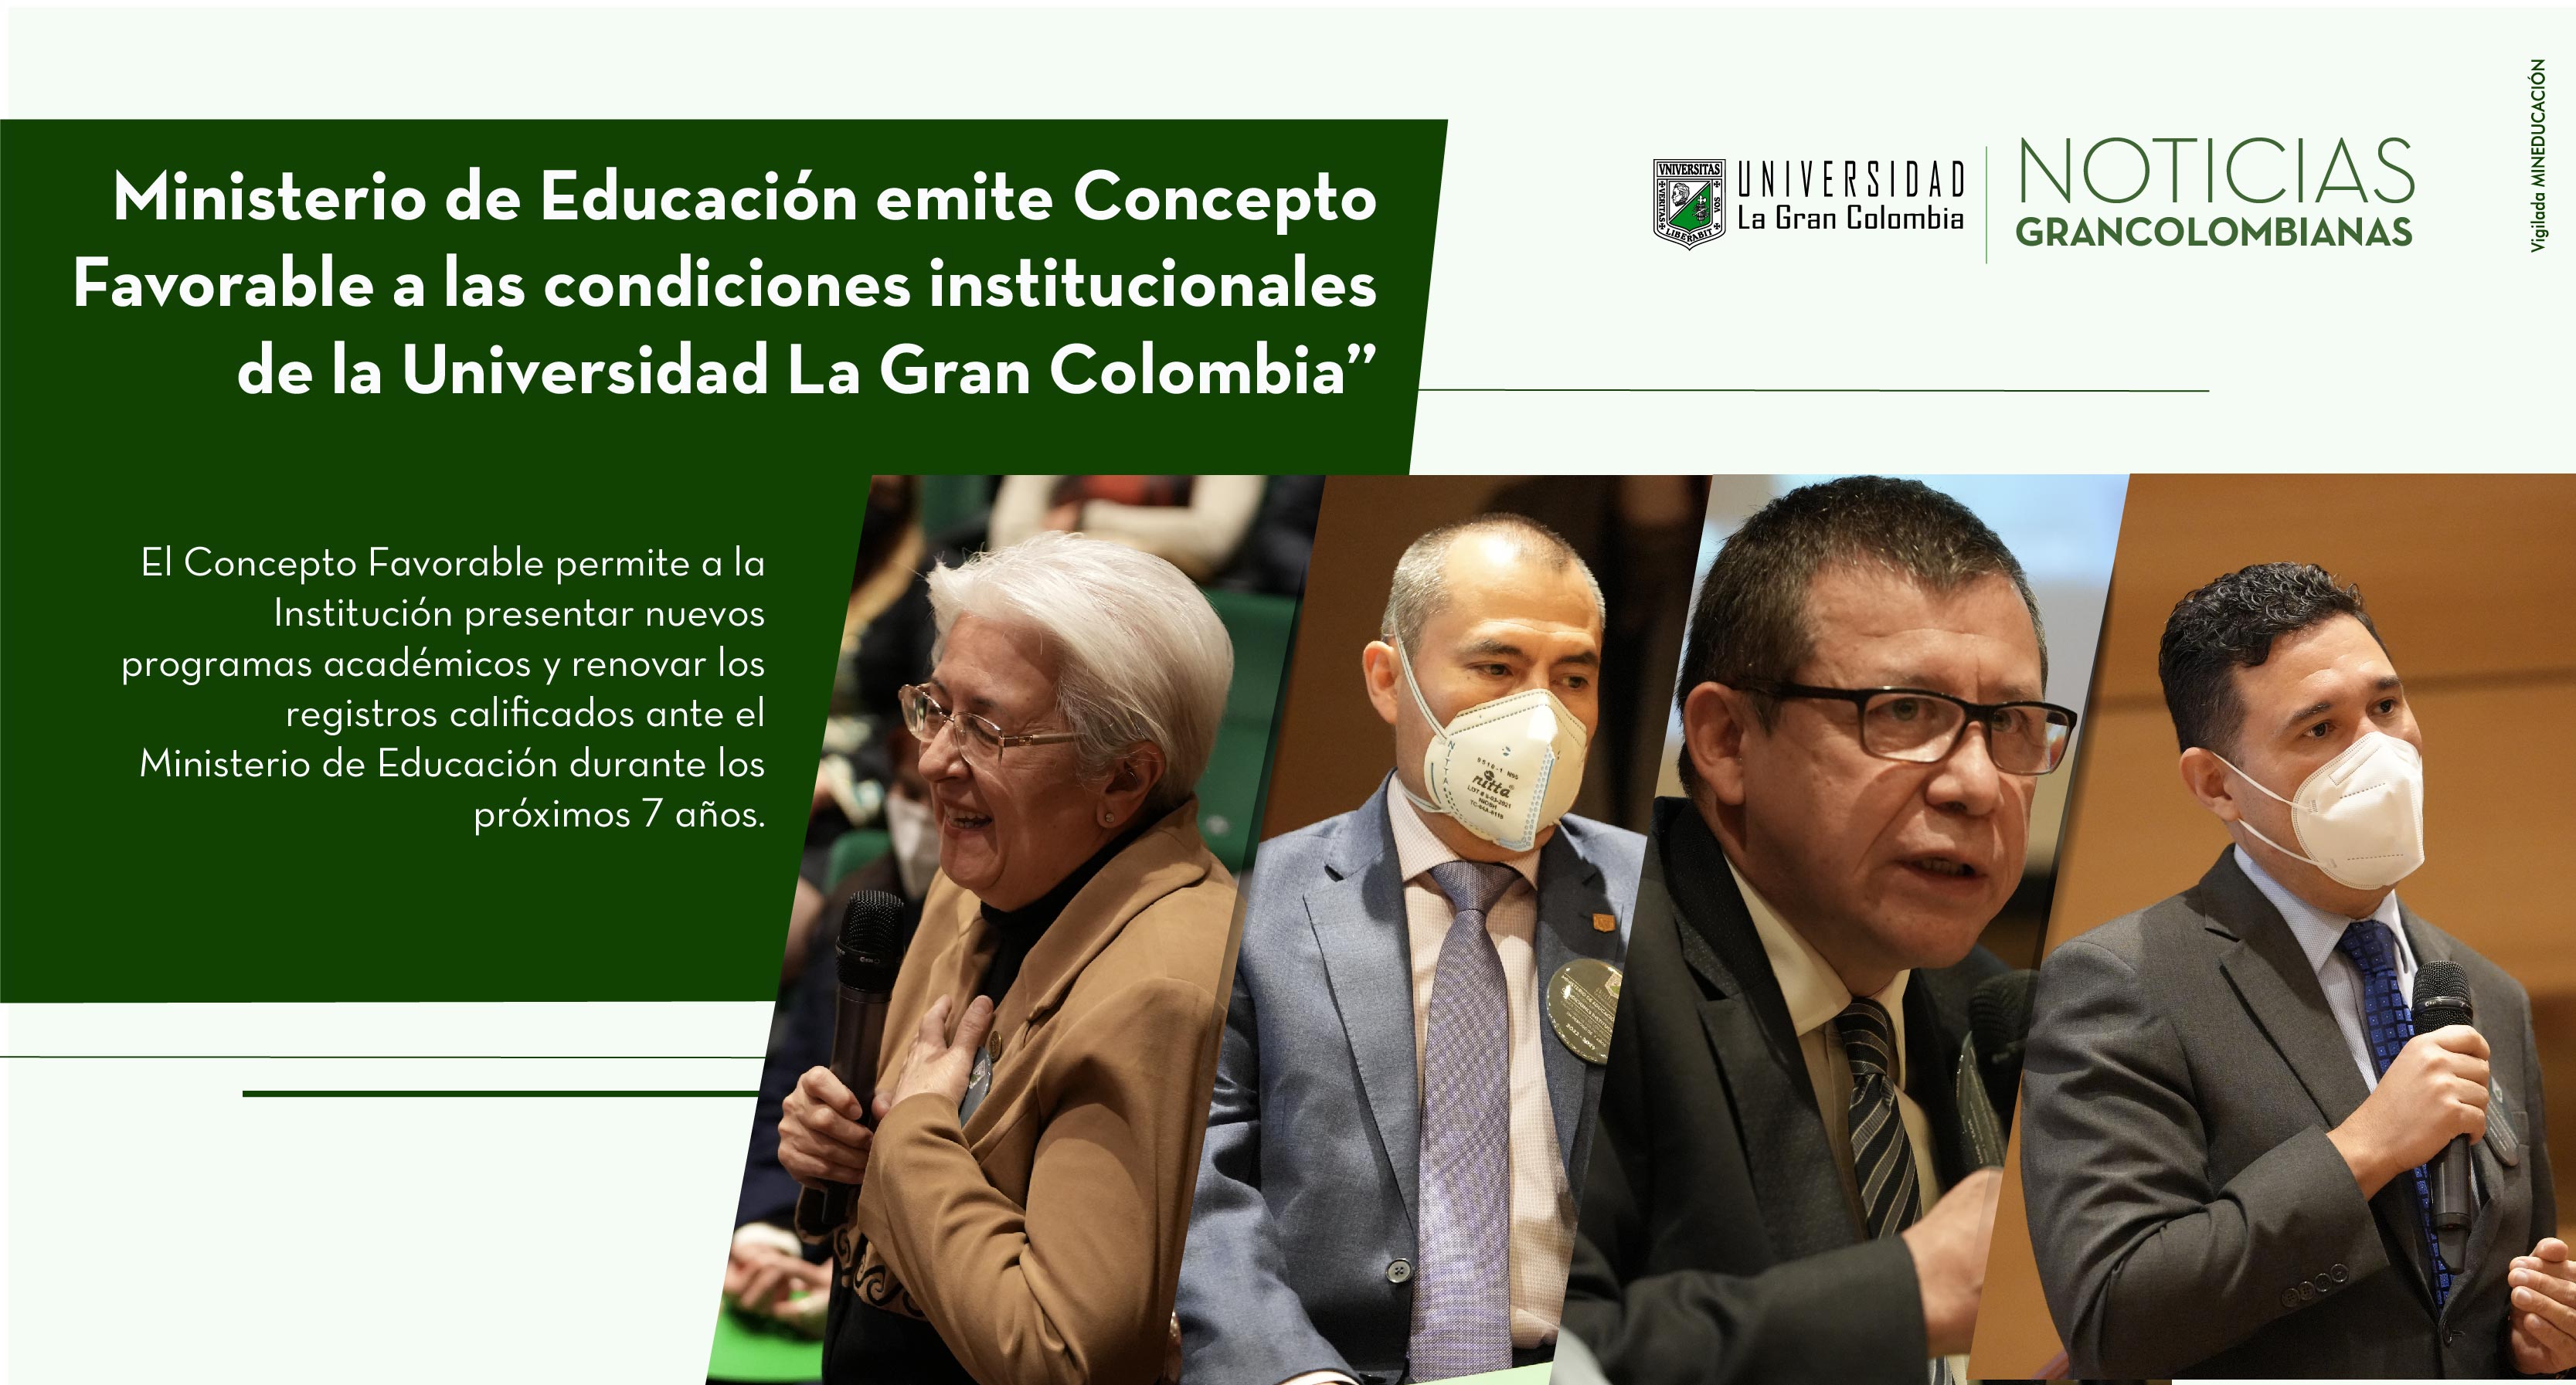 Ministerio de Educación emite Concepto Favorable a las condiciones institucionales de la Universidad La Gran Colombia